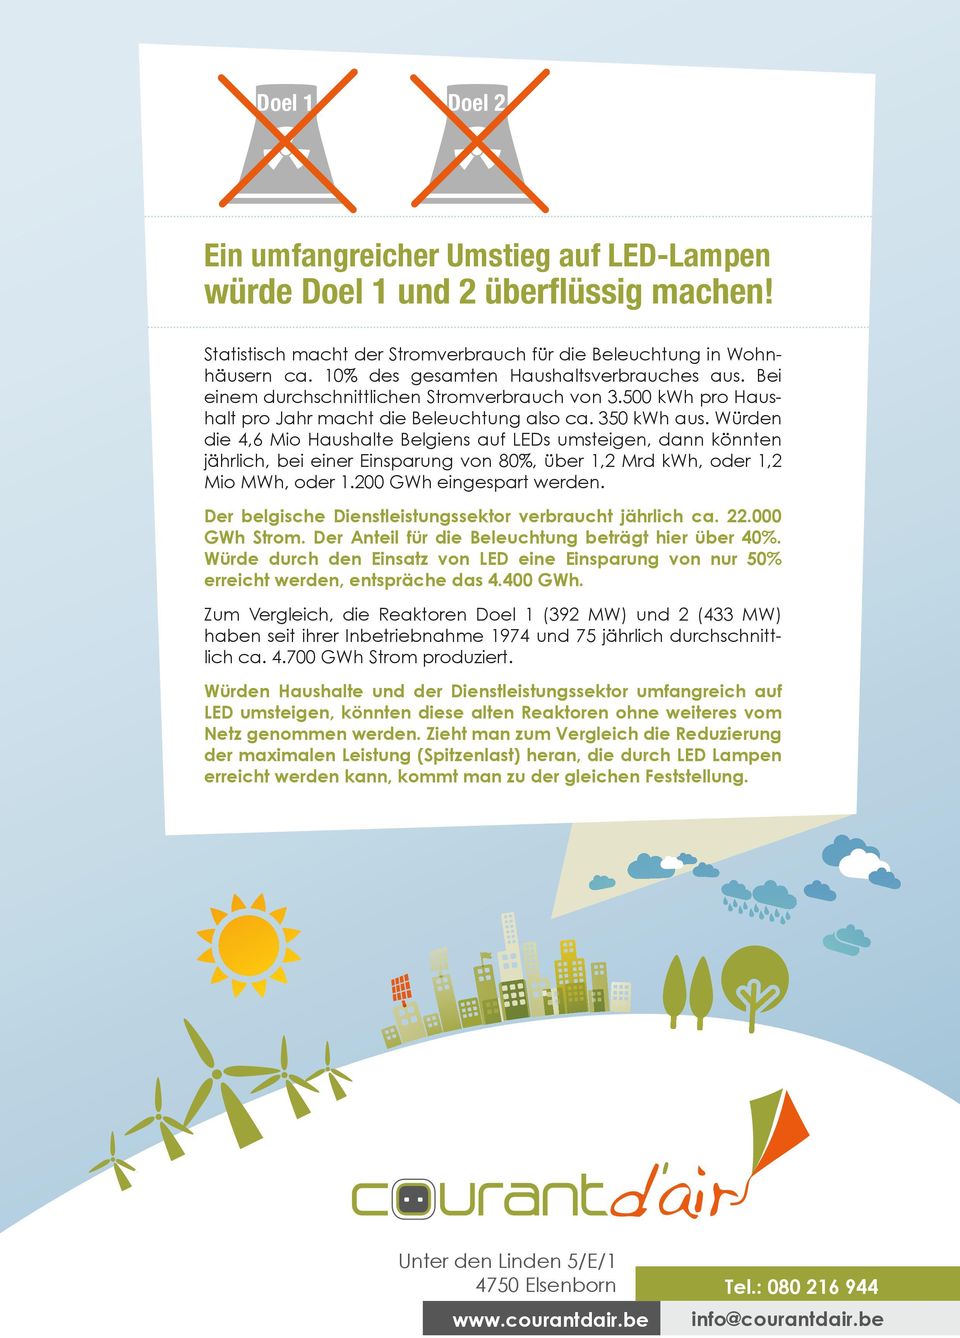 Würden die 4,6 Mio Haushalte Belgiens auf LEDs umsteigen, dann könnten jährlich, bei einer Einsparung von 80%, über 1,2 Mrd kwh, oder 1,2 Mio MWh, oder 1.200 GWh eingespart werden.